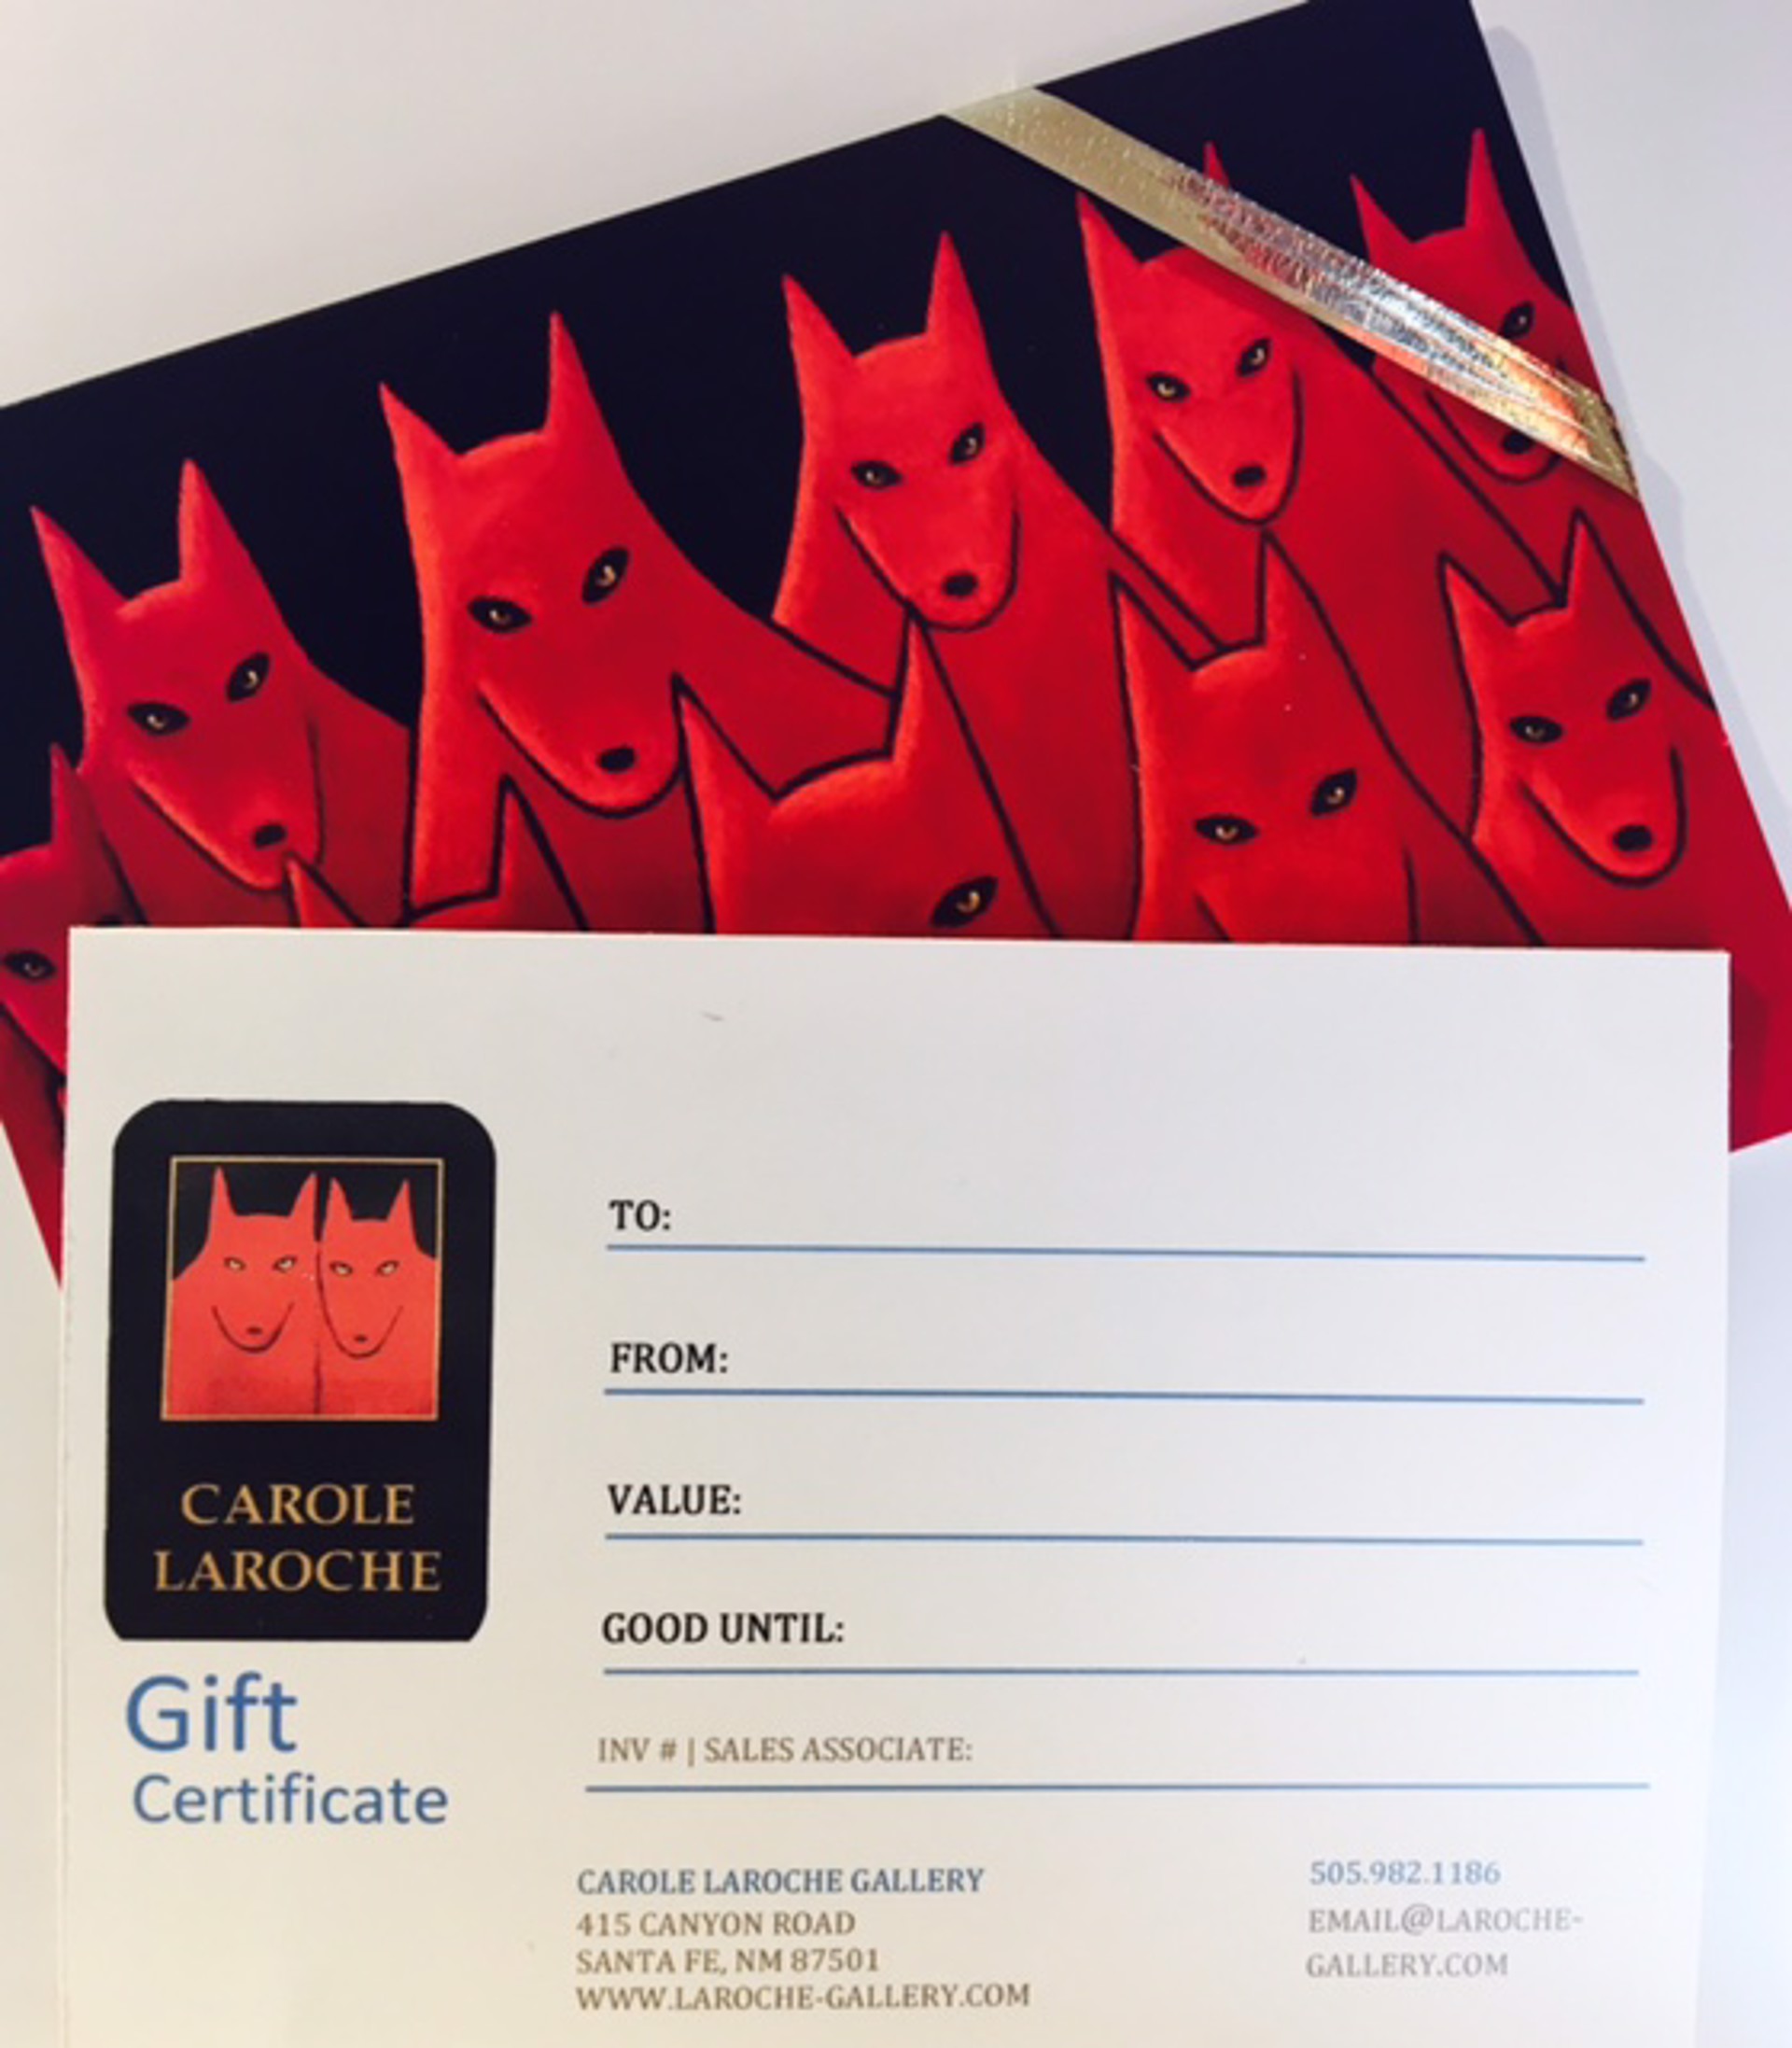 Gift Certificate by Carole LaRoche